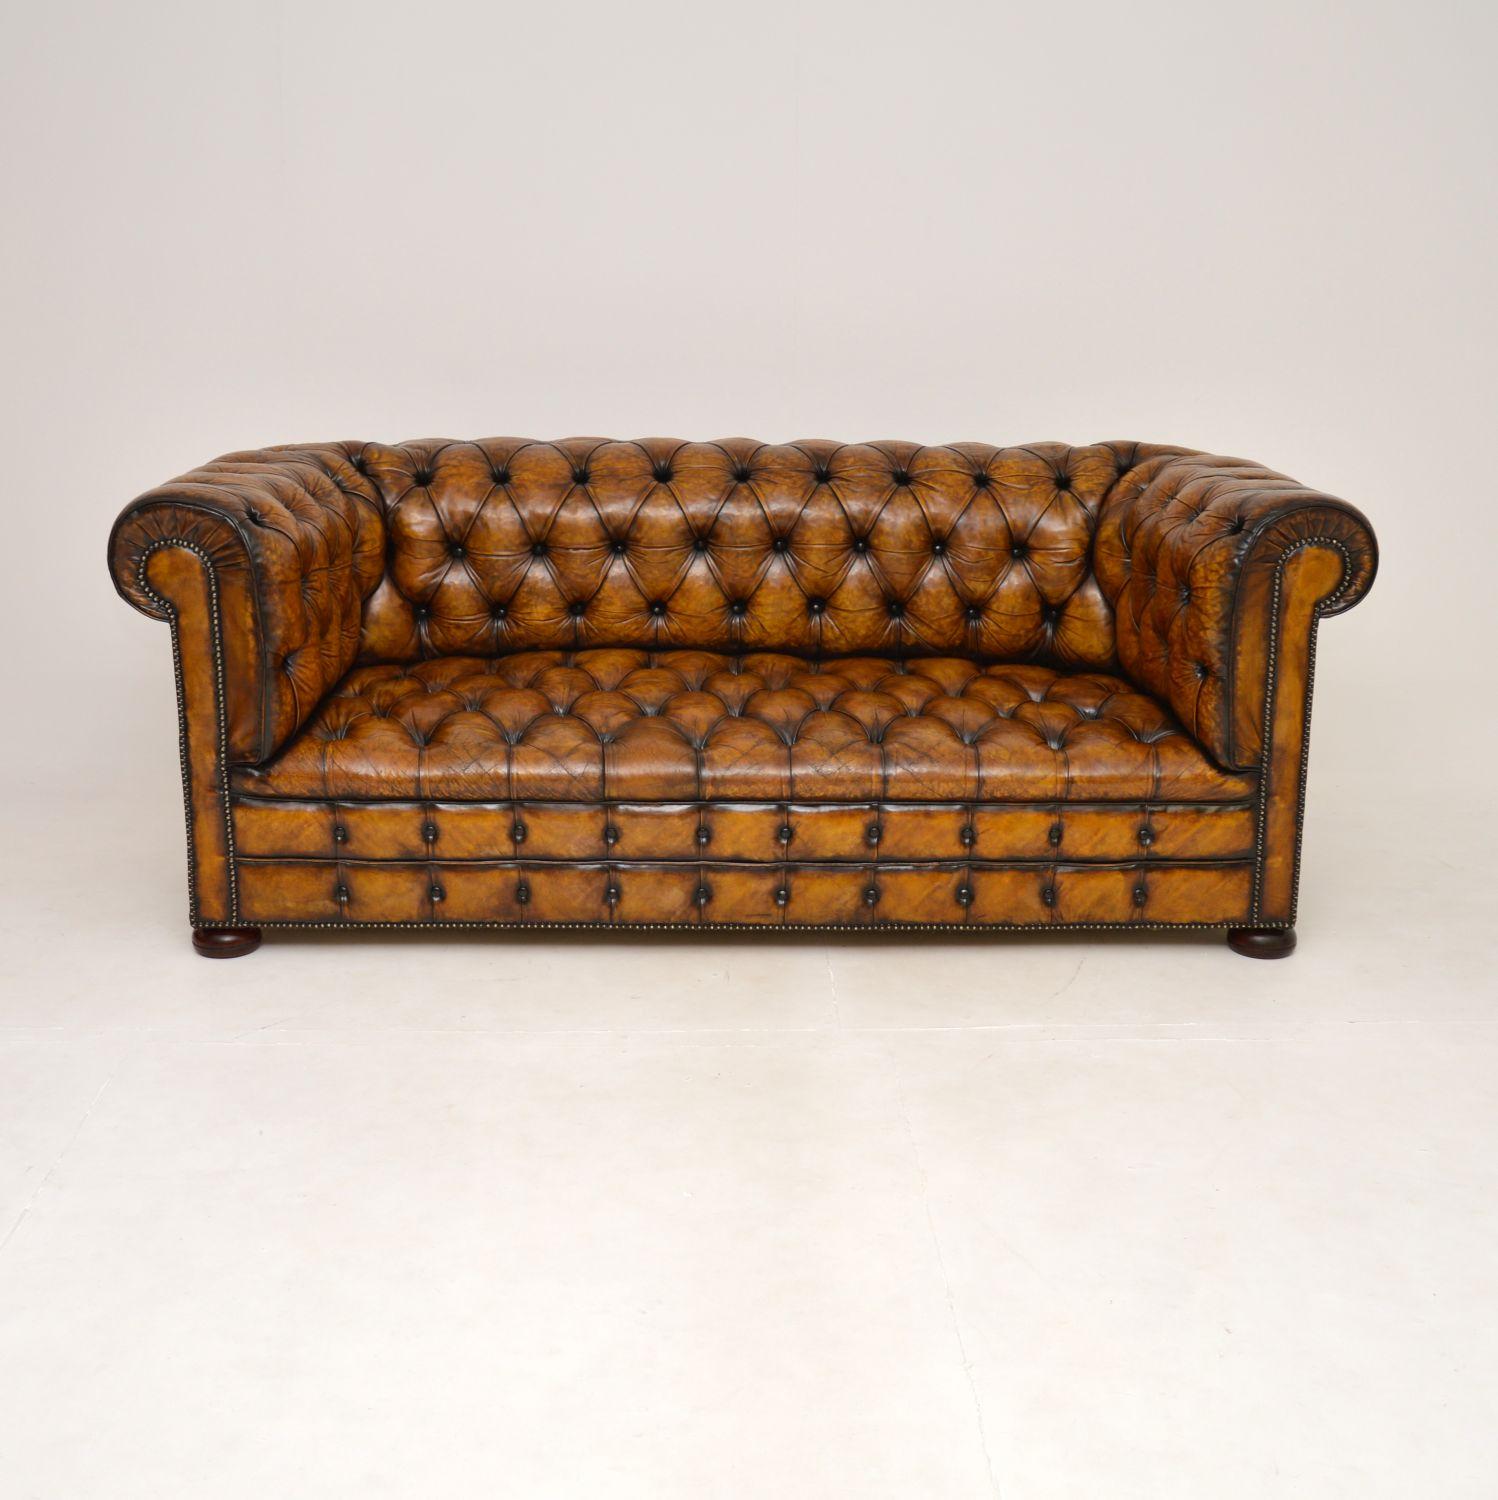 Ein prächtiges antikes Chesterfield-Sofa aus Leder mit tiefen Knöpfen. Sie wurde in England hergestellt, wir würden sie auf die 1920er Jahre datieren.

Es ist von hervorragender Qualität, es ist extrem gut gebaut und schwer. Sie hat eine knackige